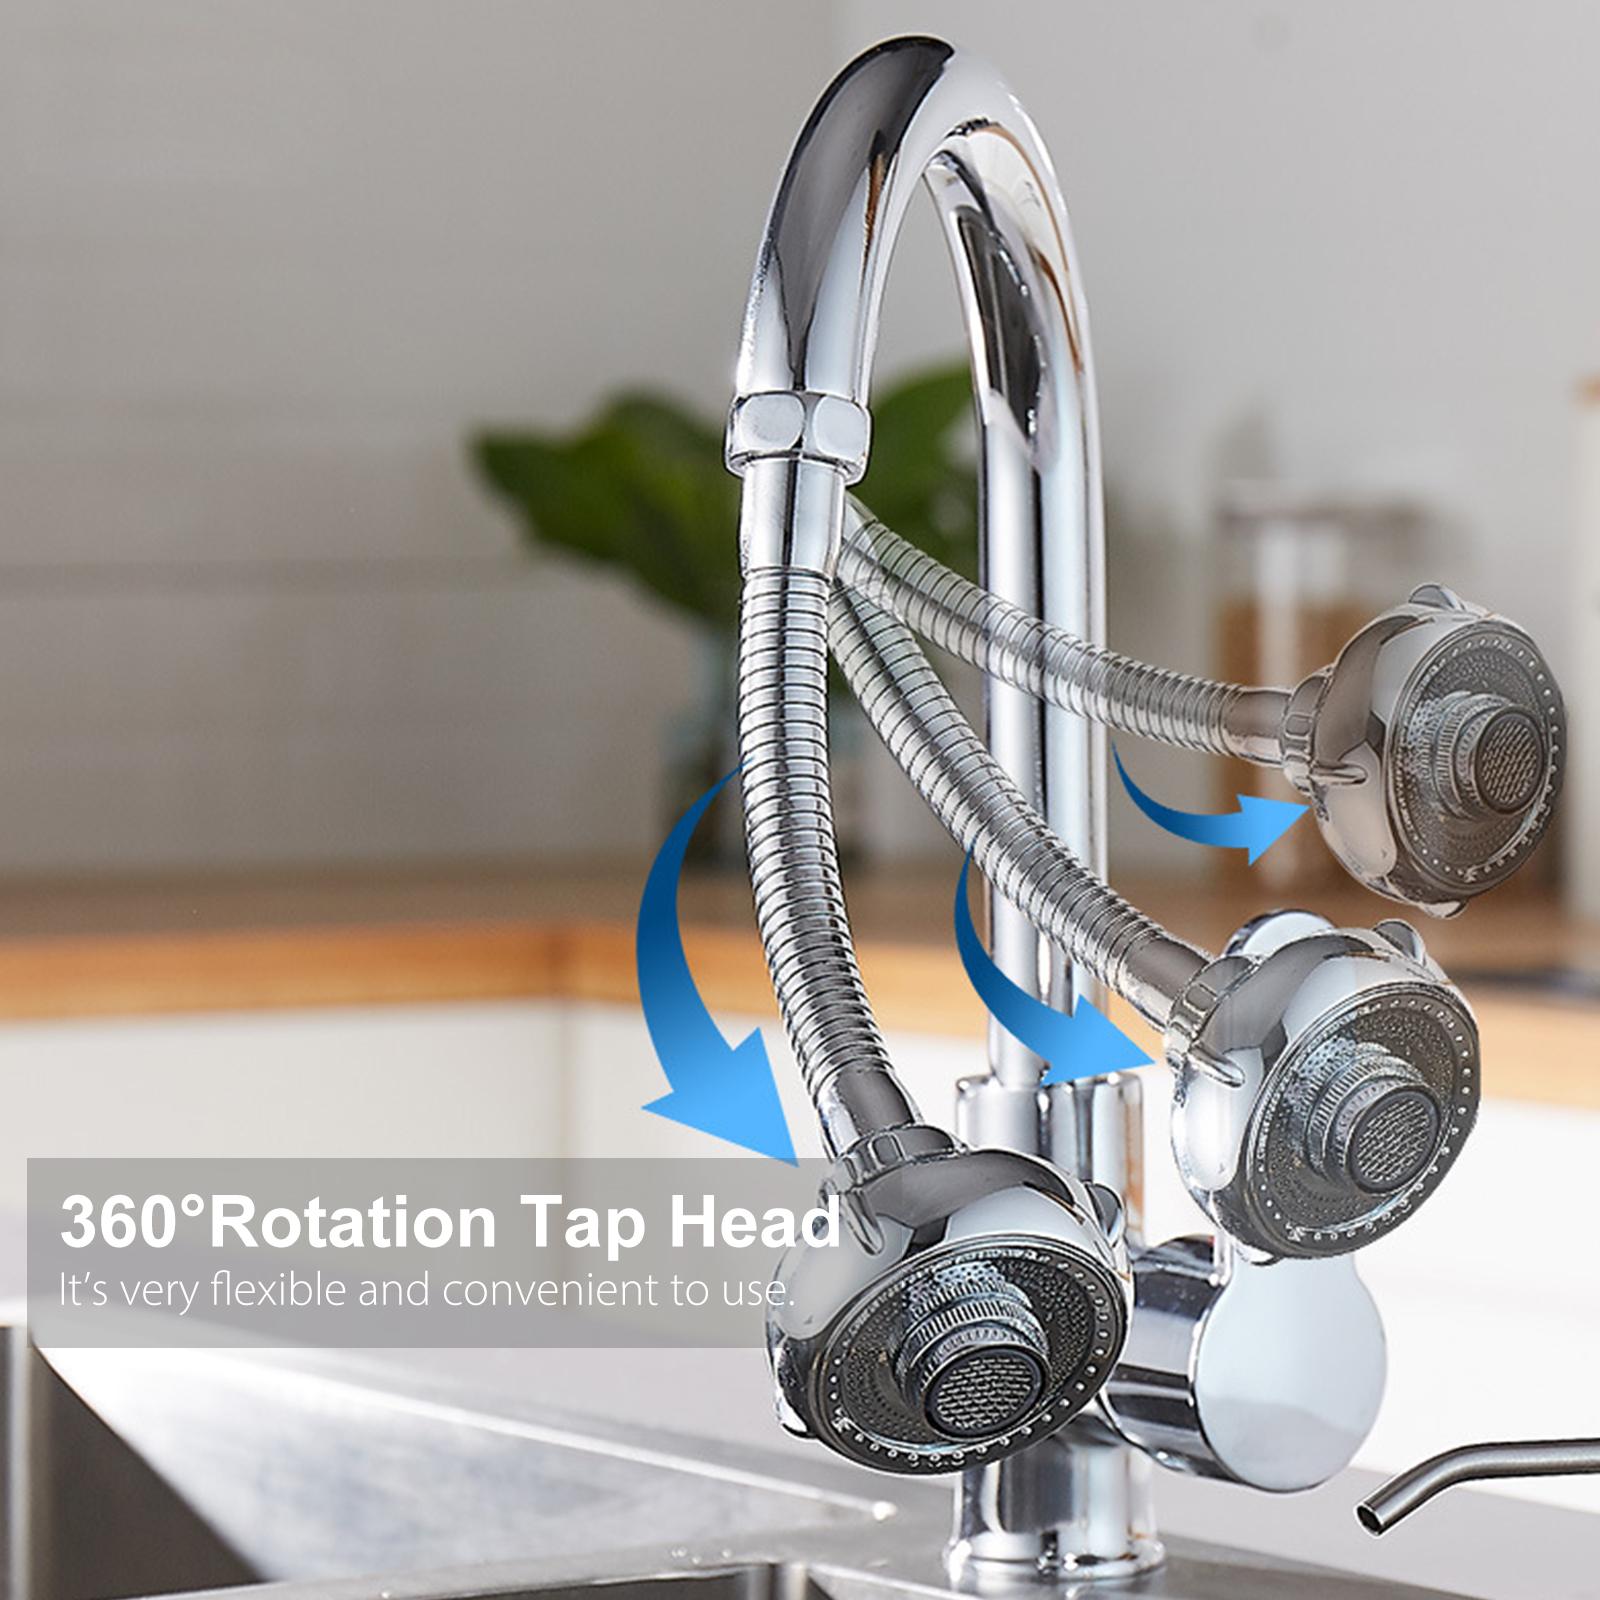 Đaầu vòi nước rửa chén xoay 360 ° với 2 chế độ Tiết kiệm nước